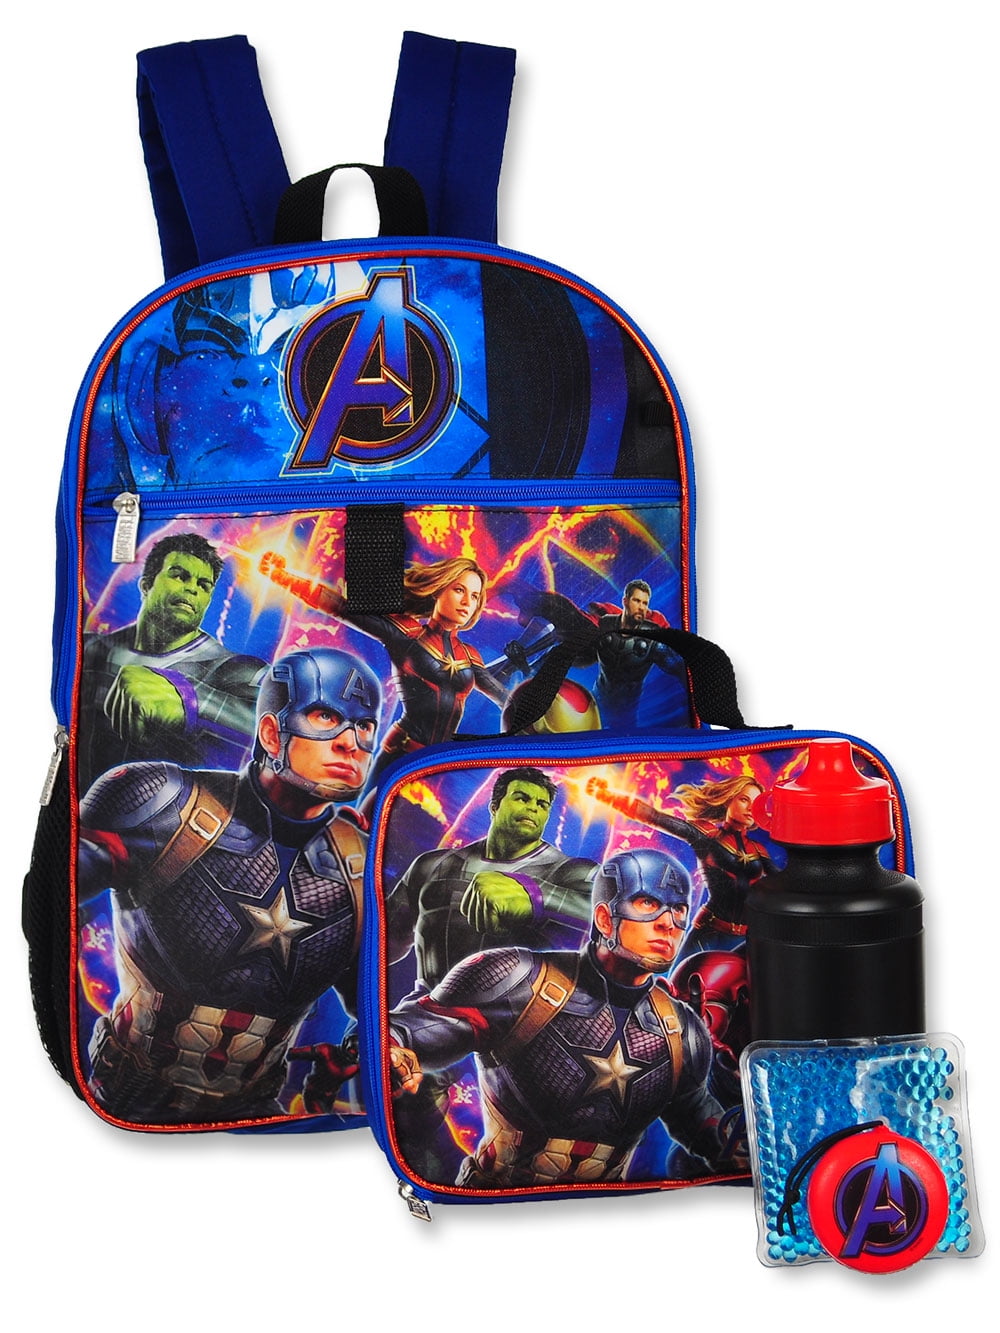 New Avengers Infinity War Vegeta Son Girls Boys School Backpack Kids 